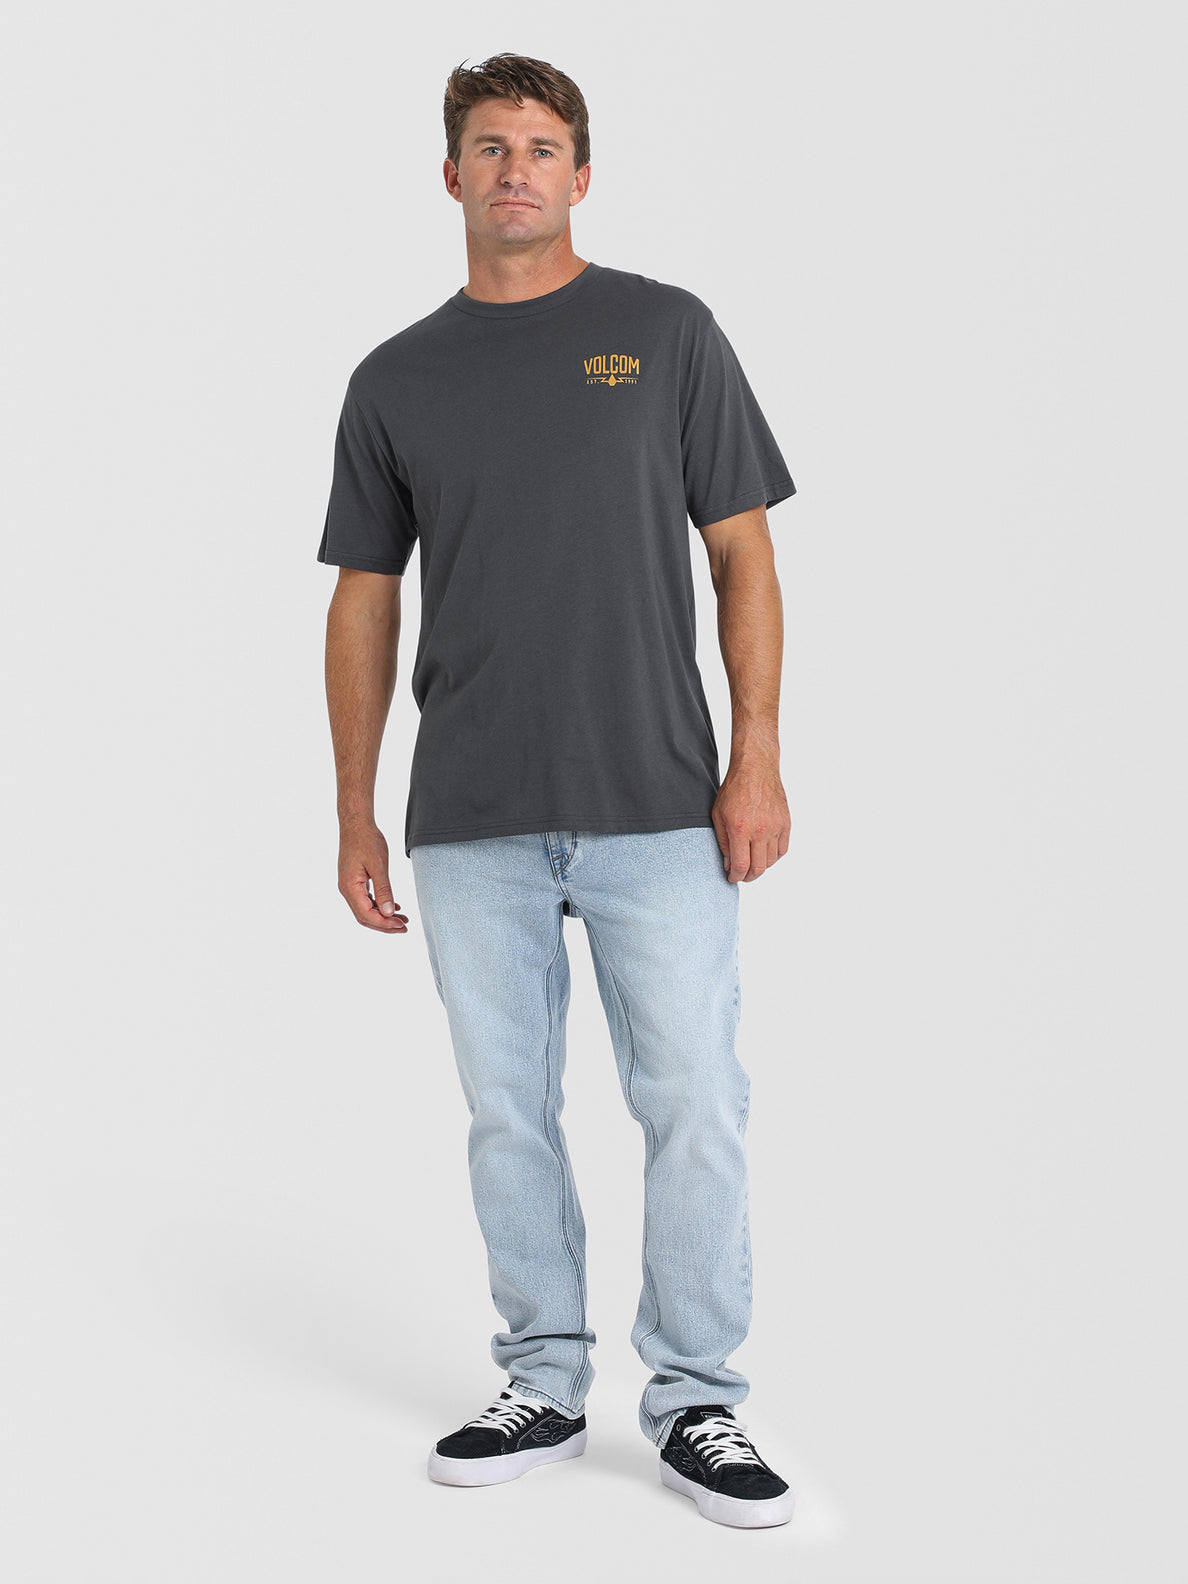 Carbidge Short Sleeve T-Shirt - Asphalt Black